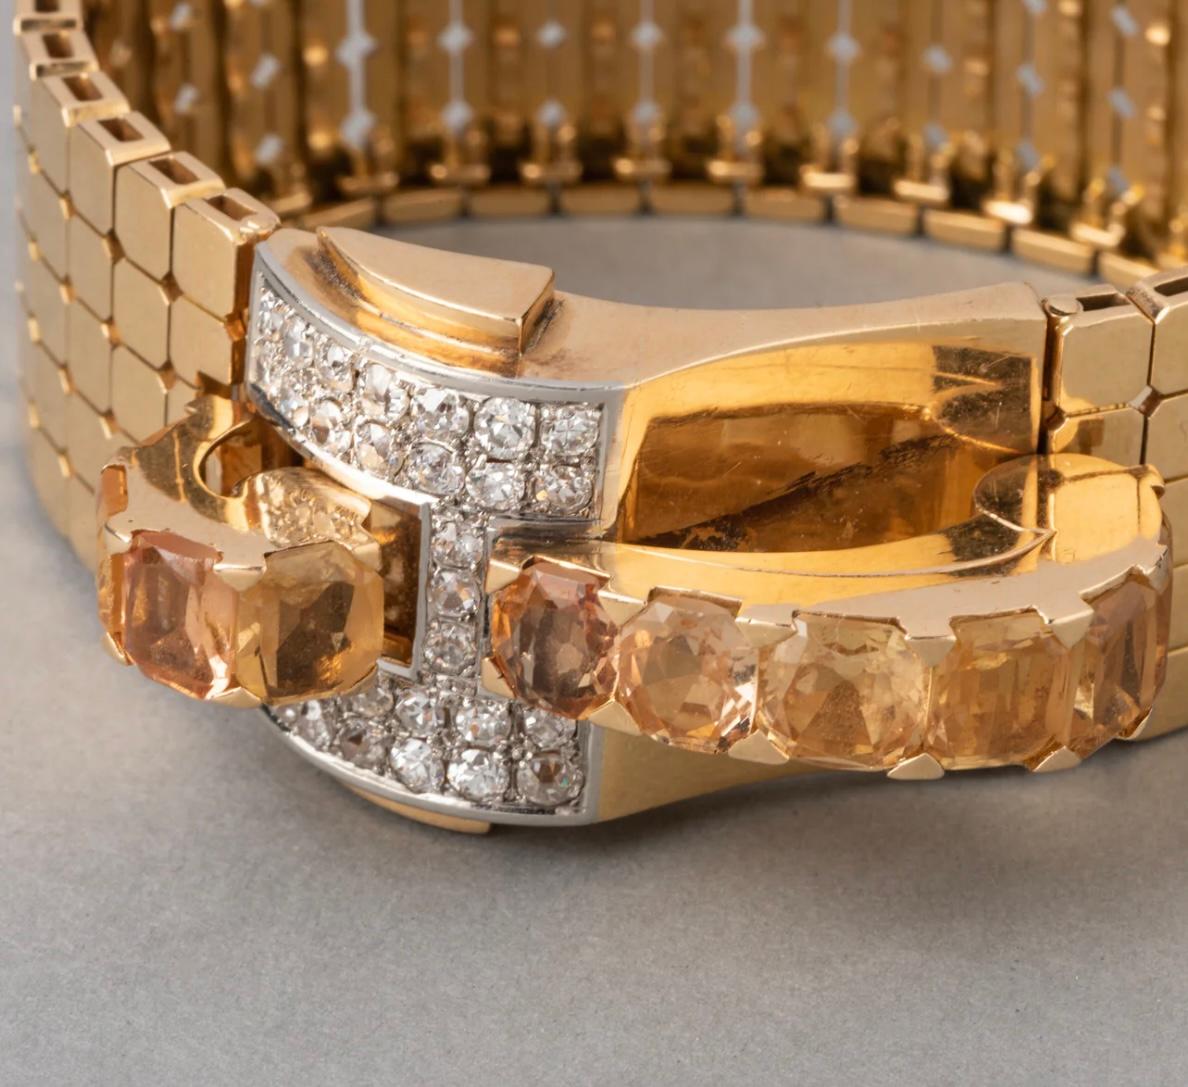 Dies ist ein französisches Retro-Diamant und Citrin Schnalle Armband aus den 1940er Jahren. Er ist aus 18 Karat Gelbgold gefertigt und mit 4 Karat Zitrinen und 2,5 Karat Diamanten im europäischen Schliff besetzt. Das Armband wiegt 79,10 Gramm und